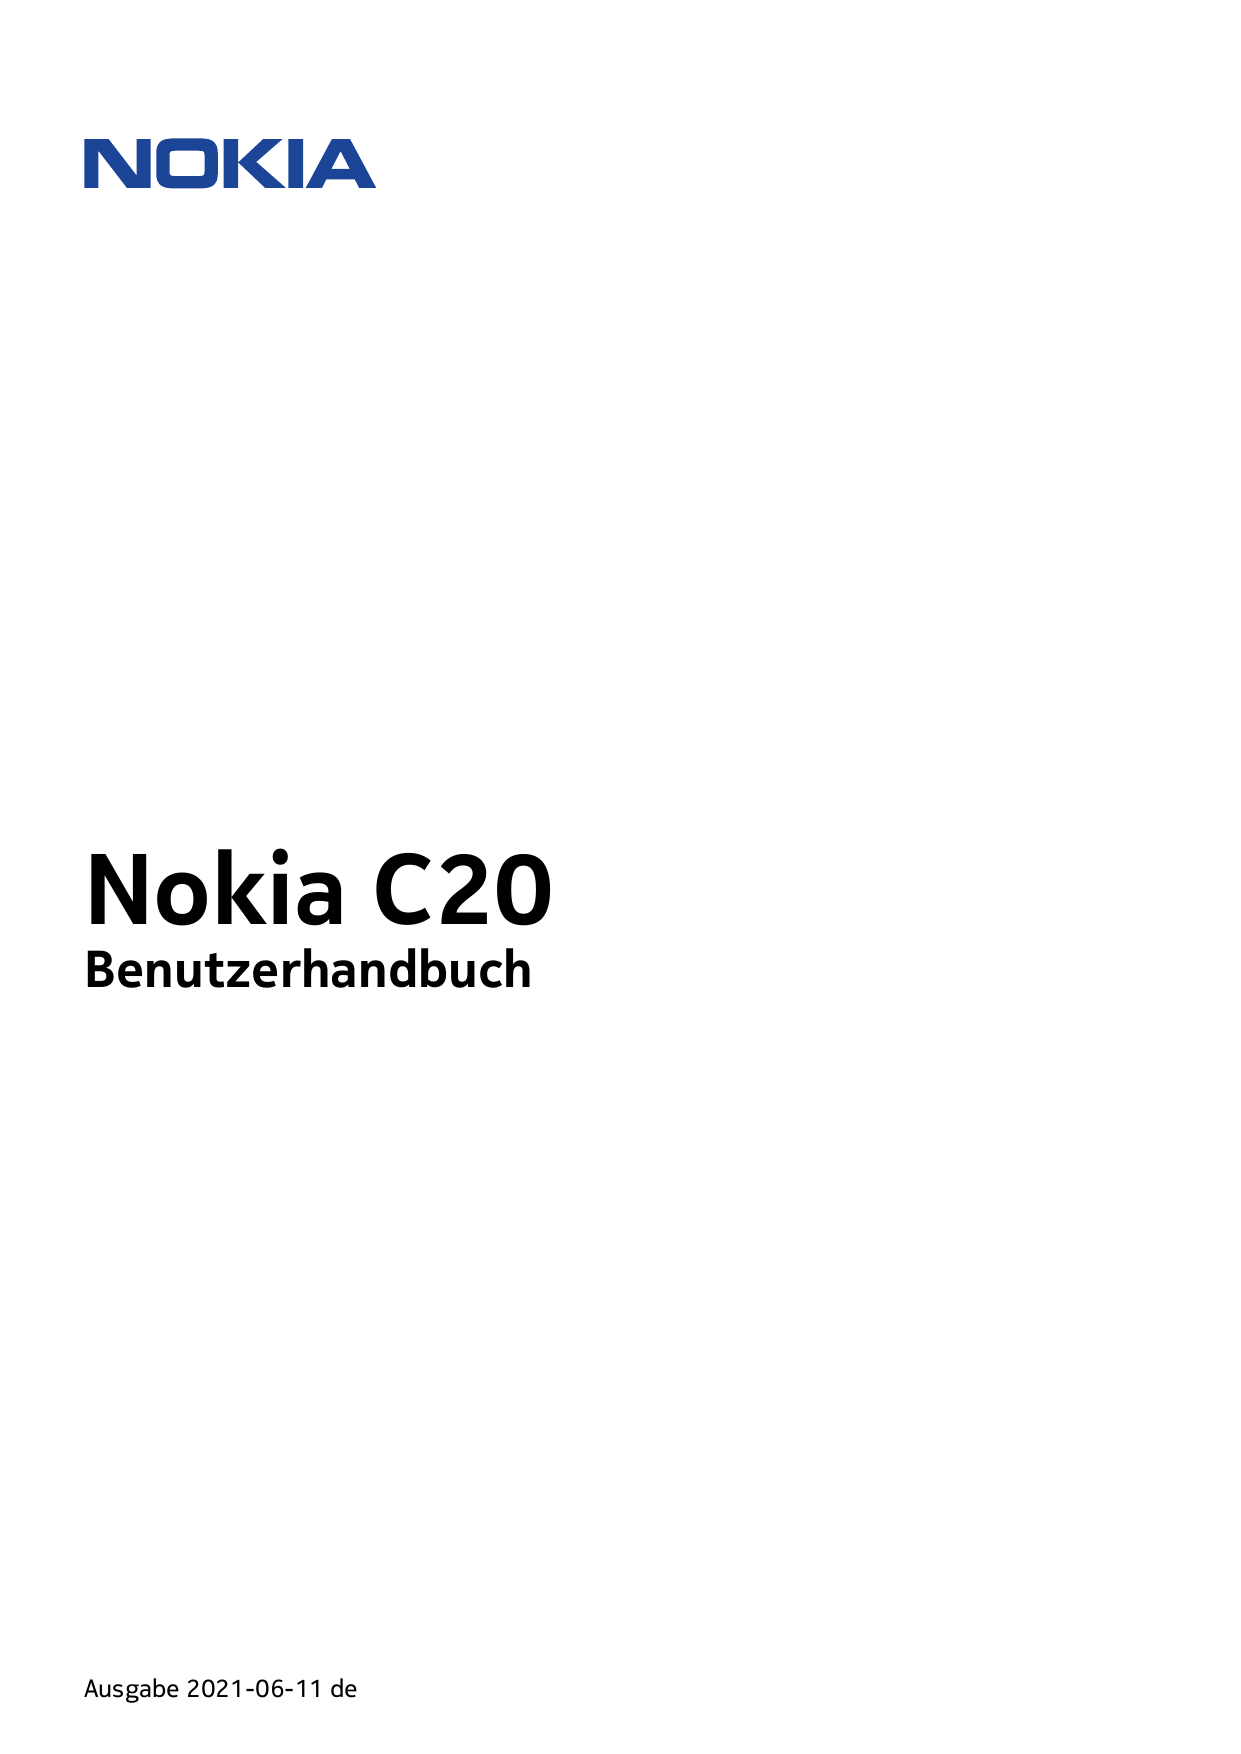 Nokia C20BenutzerhandbuchAusgabe 2021-06-11 de